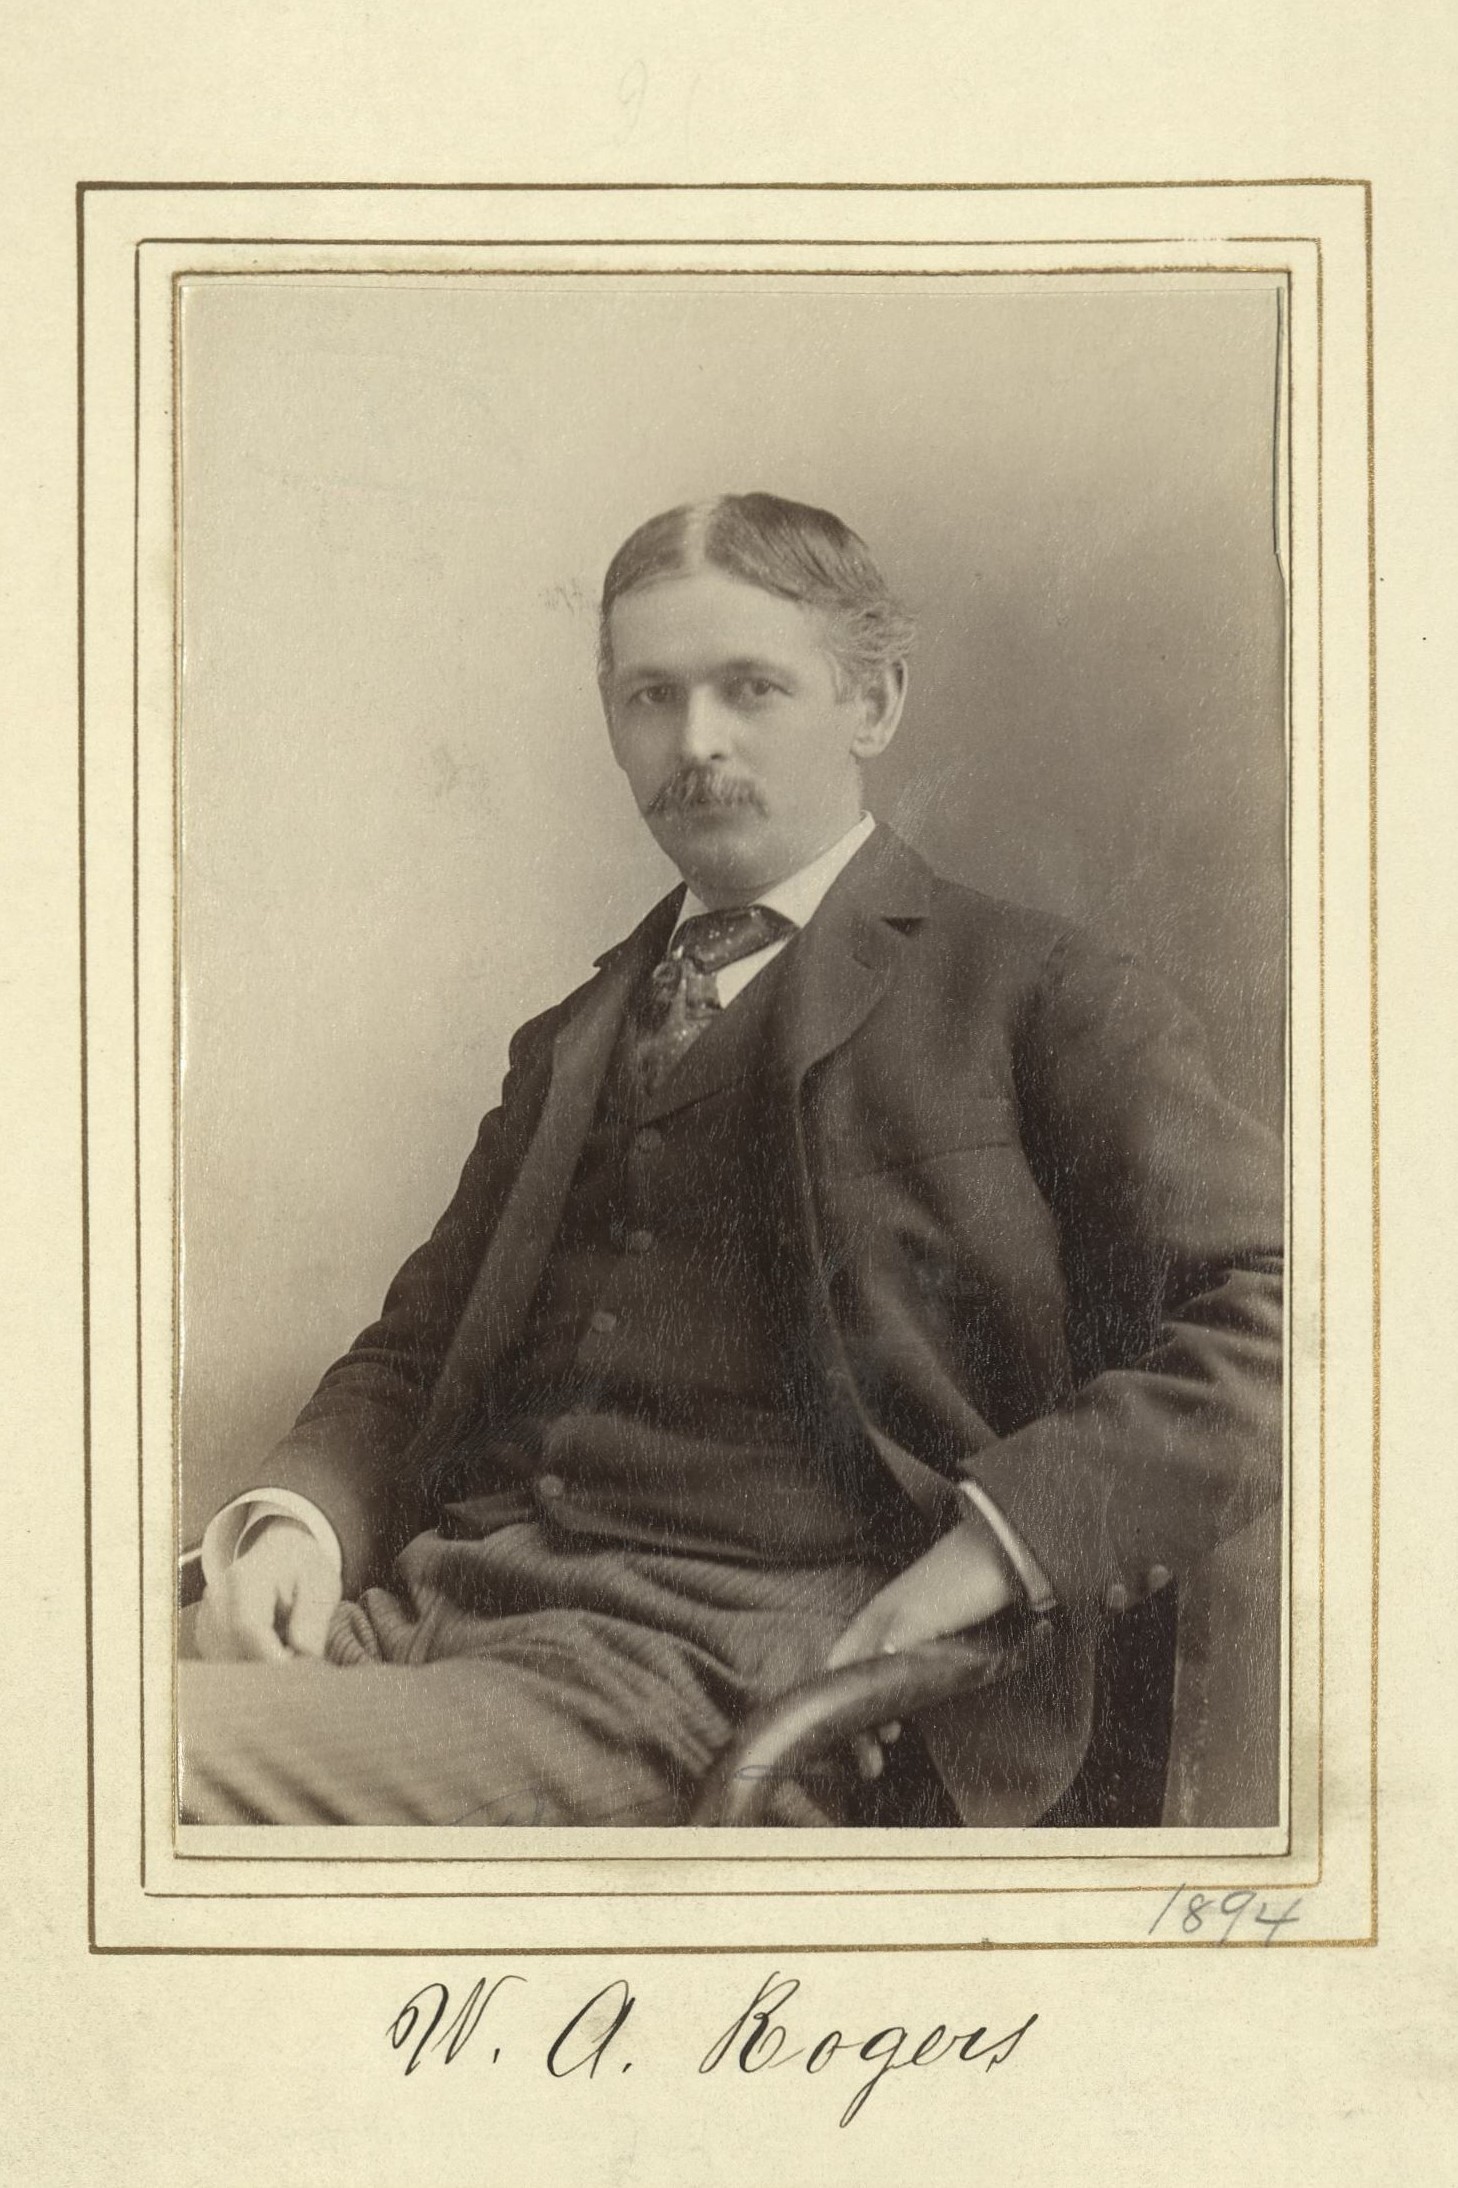 Member portrait of William Allen Rogers